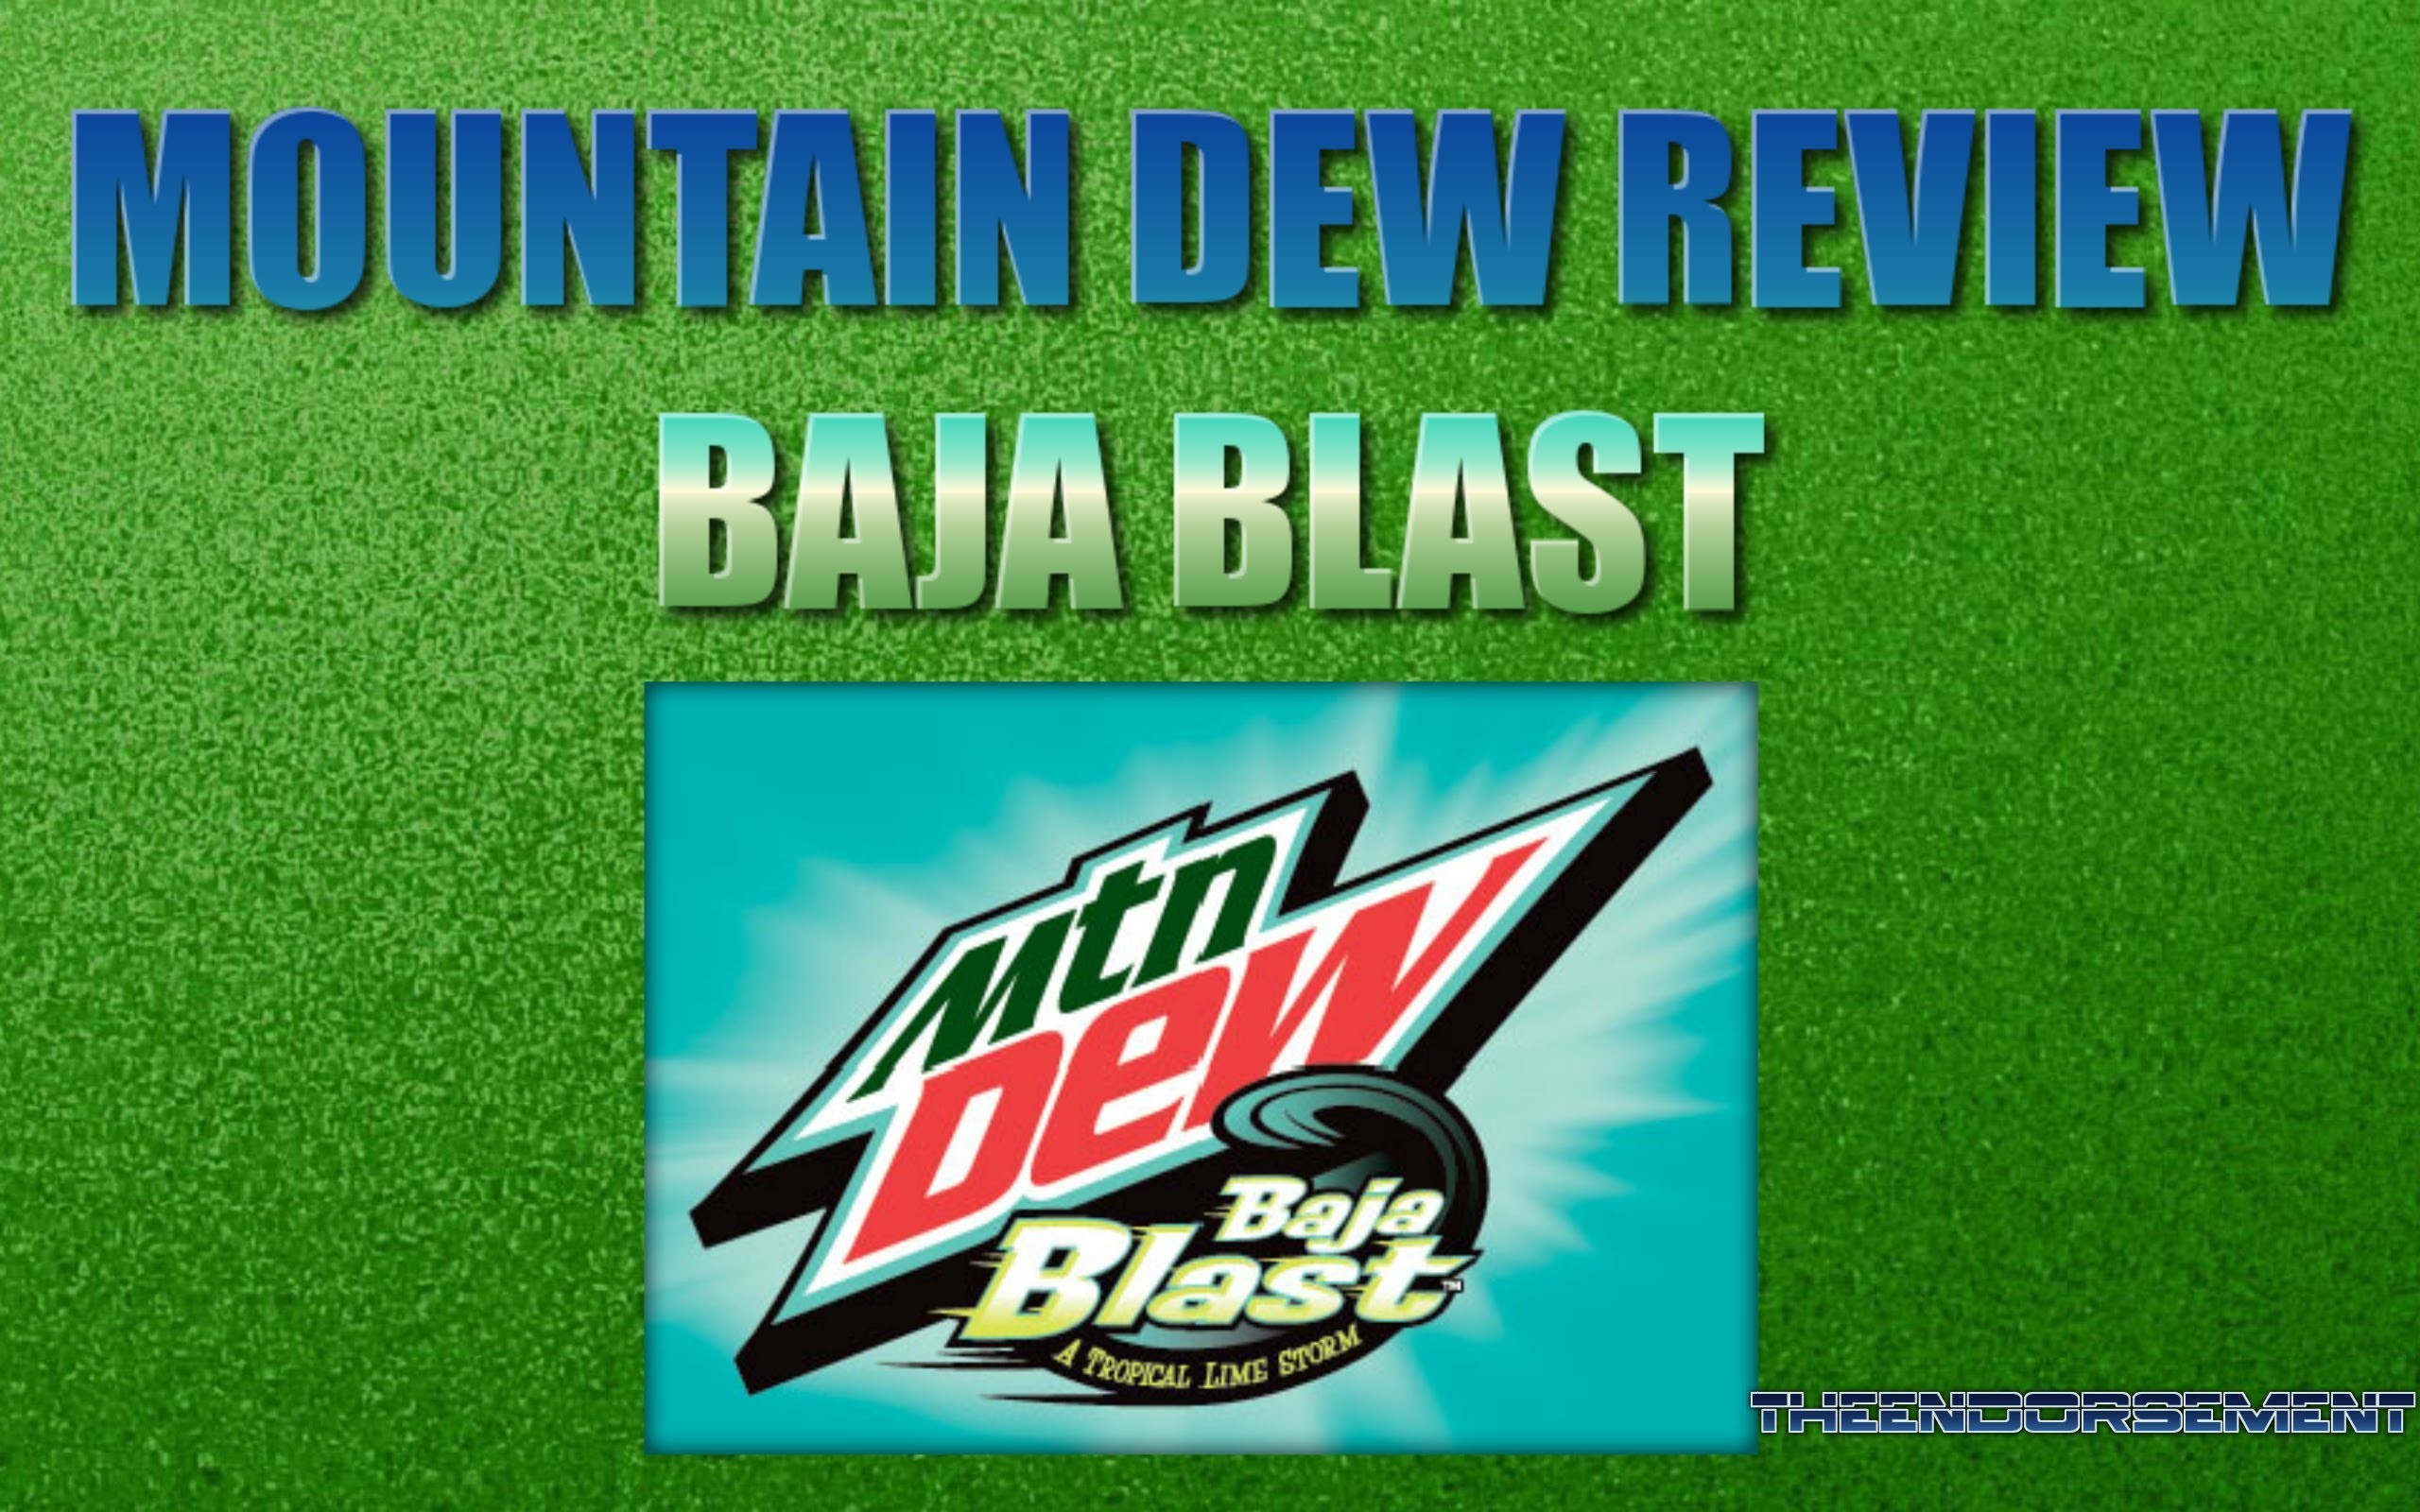 2560x1600 MOUNTAIN DEW BAJA BLAST REVIEW #32